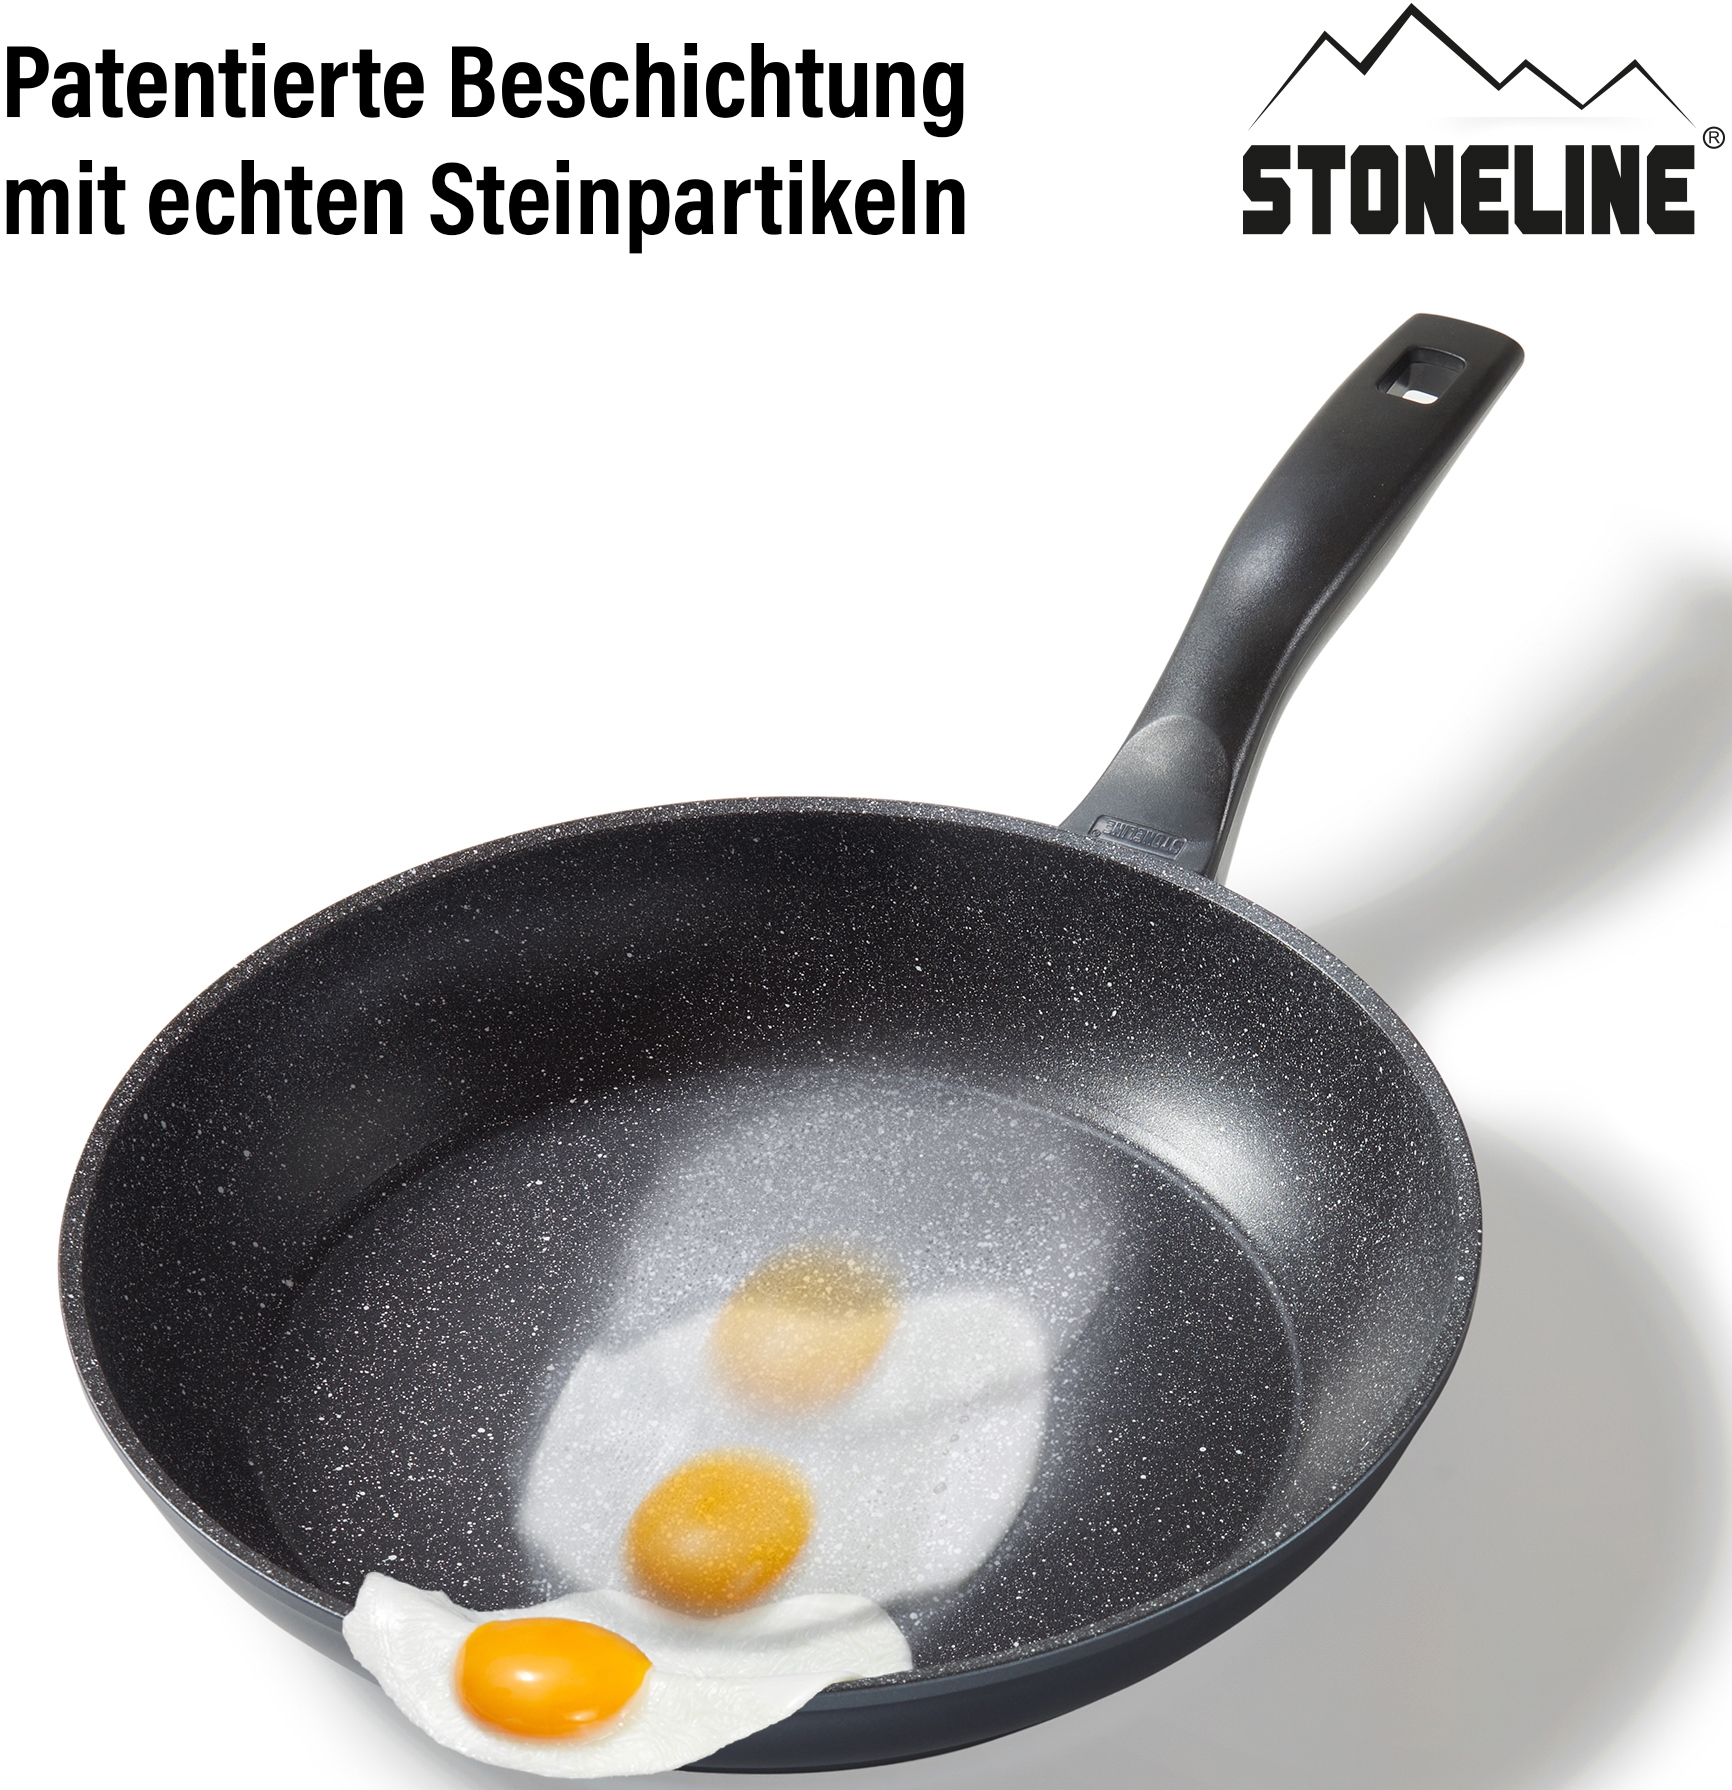 STONELINE Bratpfanne, Aluminium, (1 tlg.), STONELINE®- Keramikbeschichtung,  Induktion bei OTTO